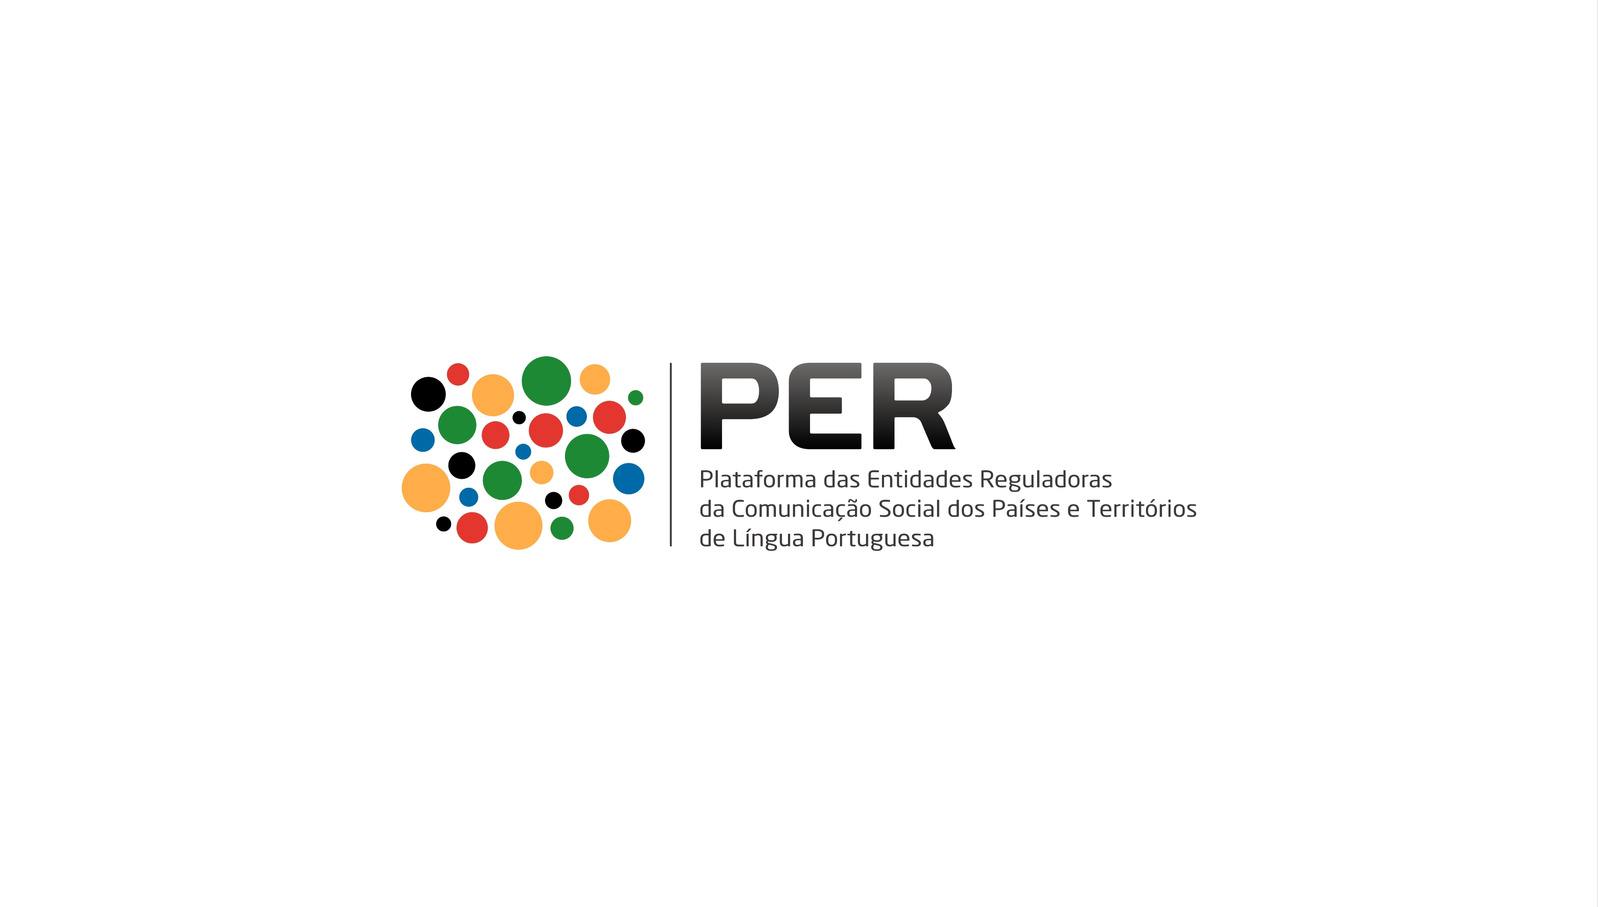 Logótipo da Plataforma das Entidades Reguladoras da Comunicação Social dos Países e Territórios de Língua Portuguesa - PER